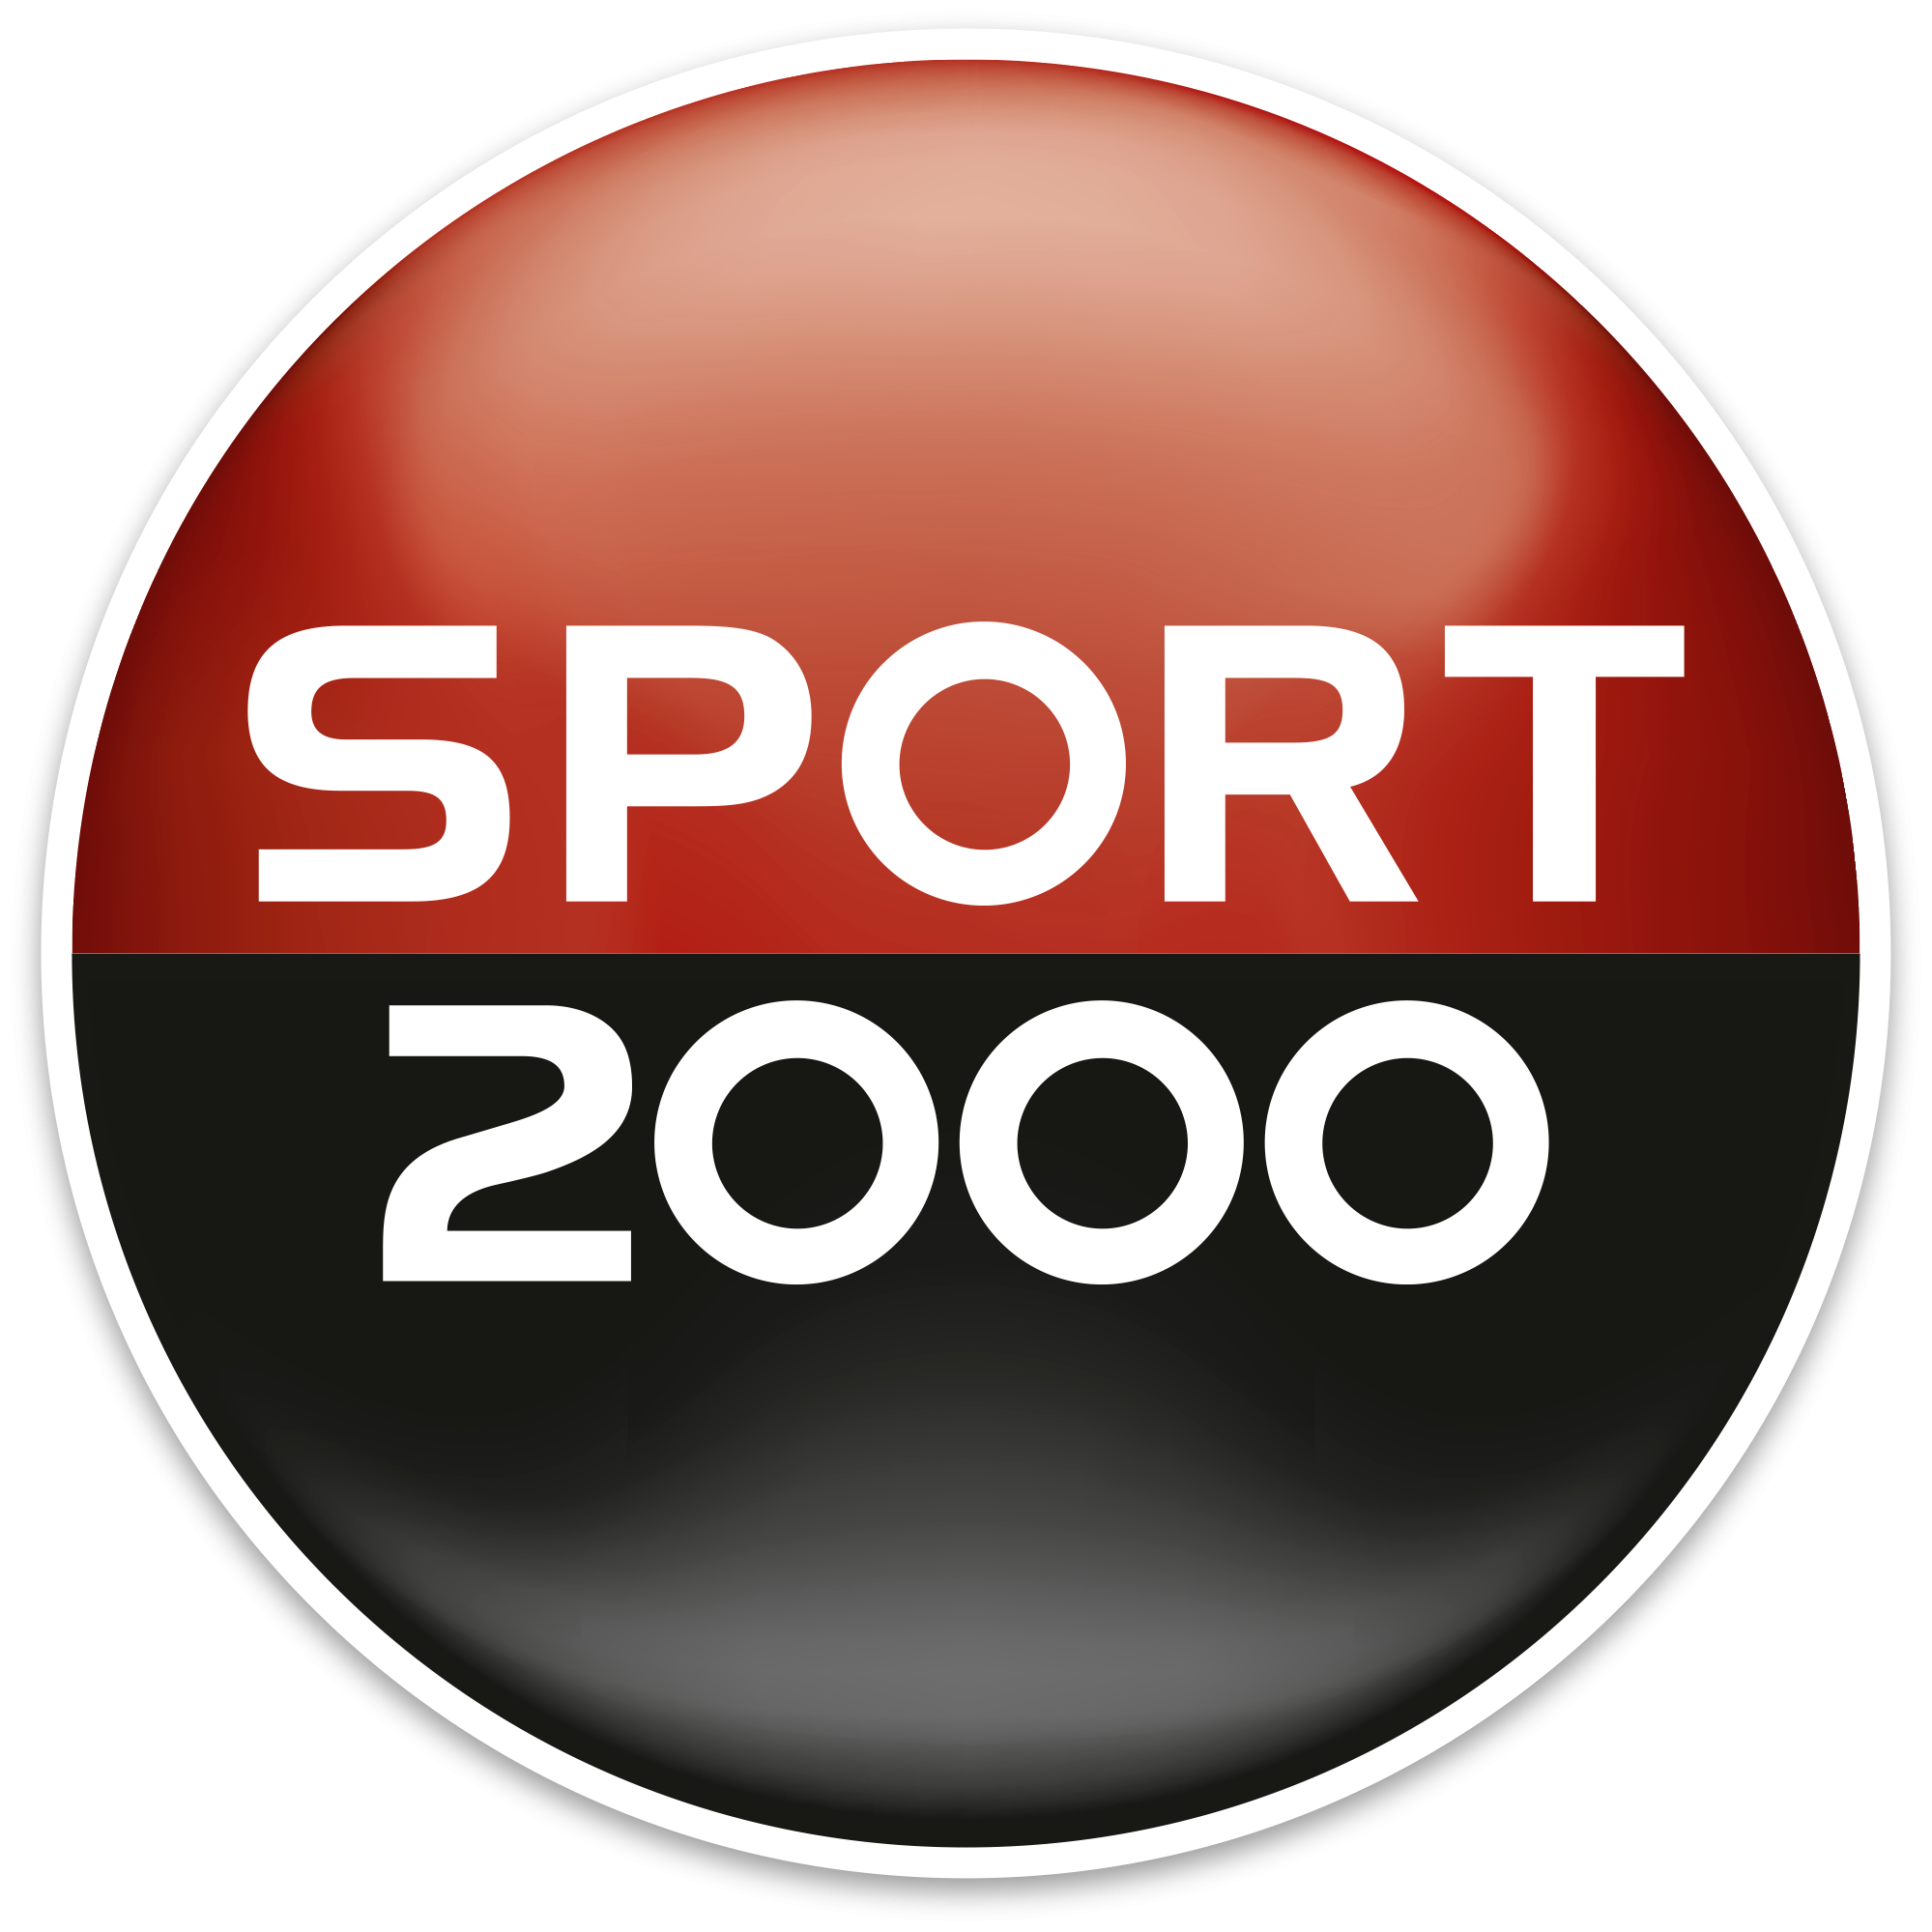 Sport 2000 Séné/Vannes